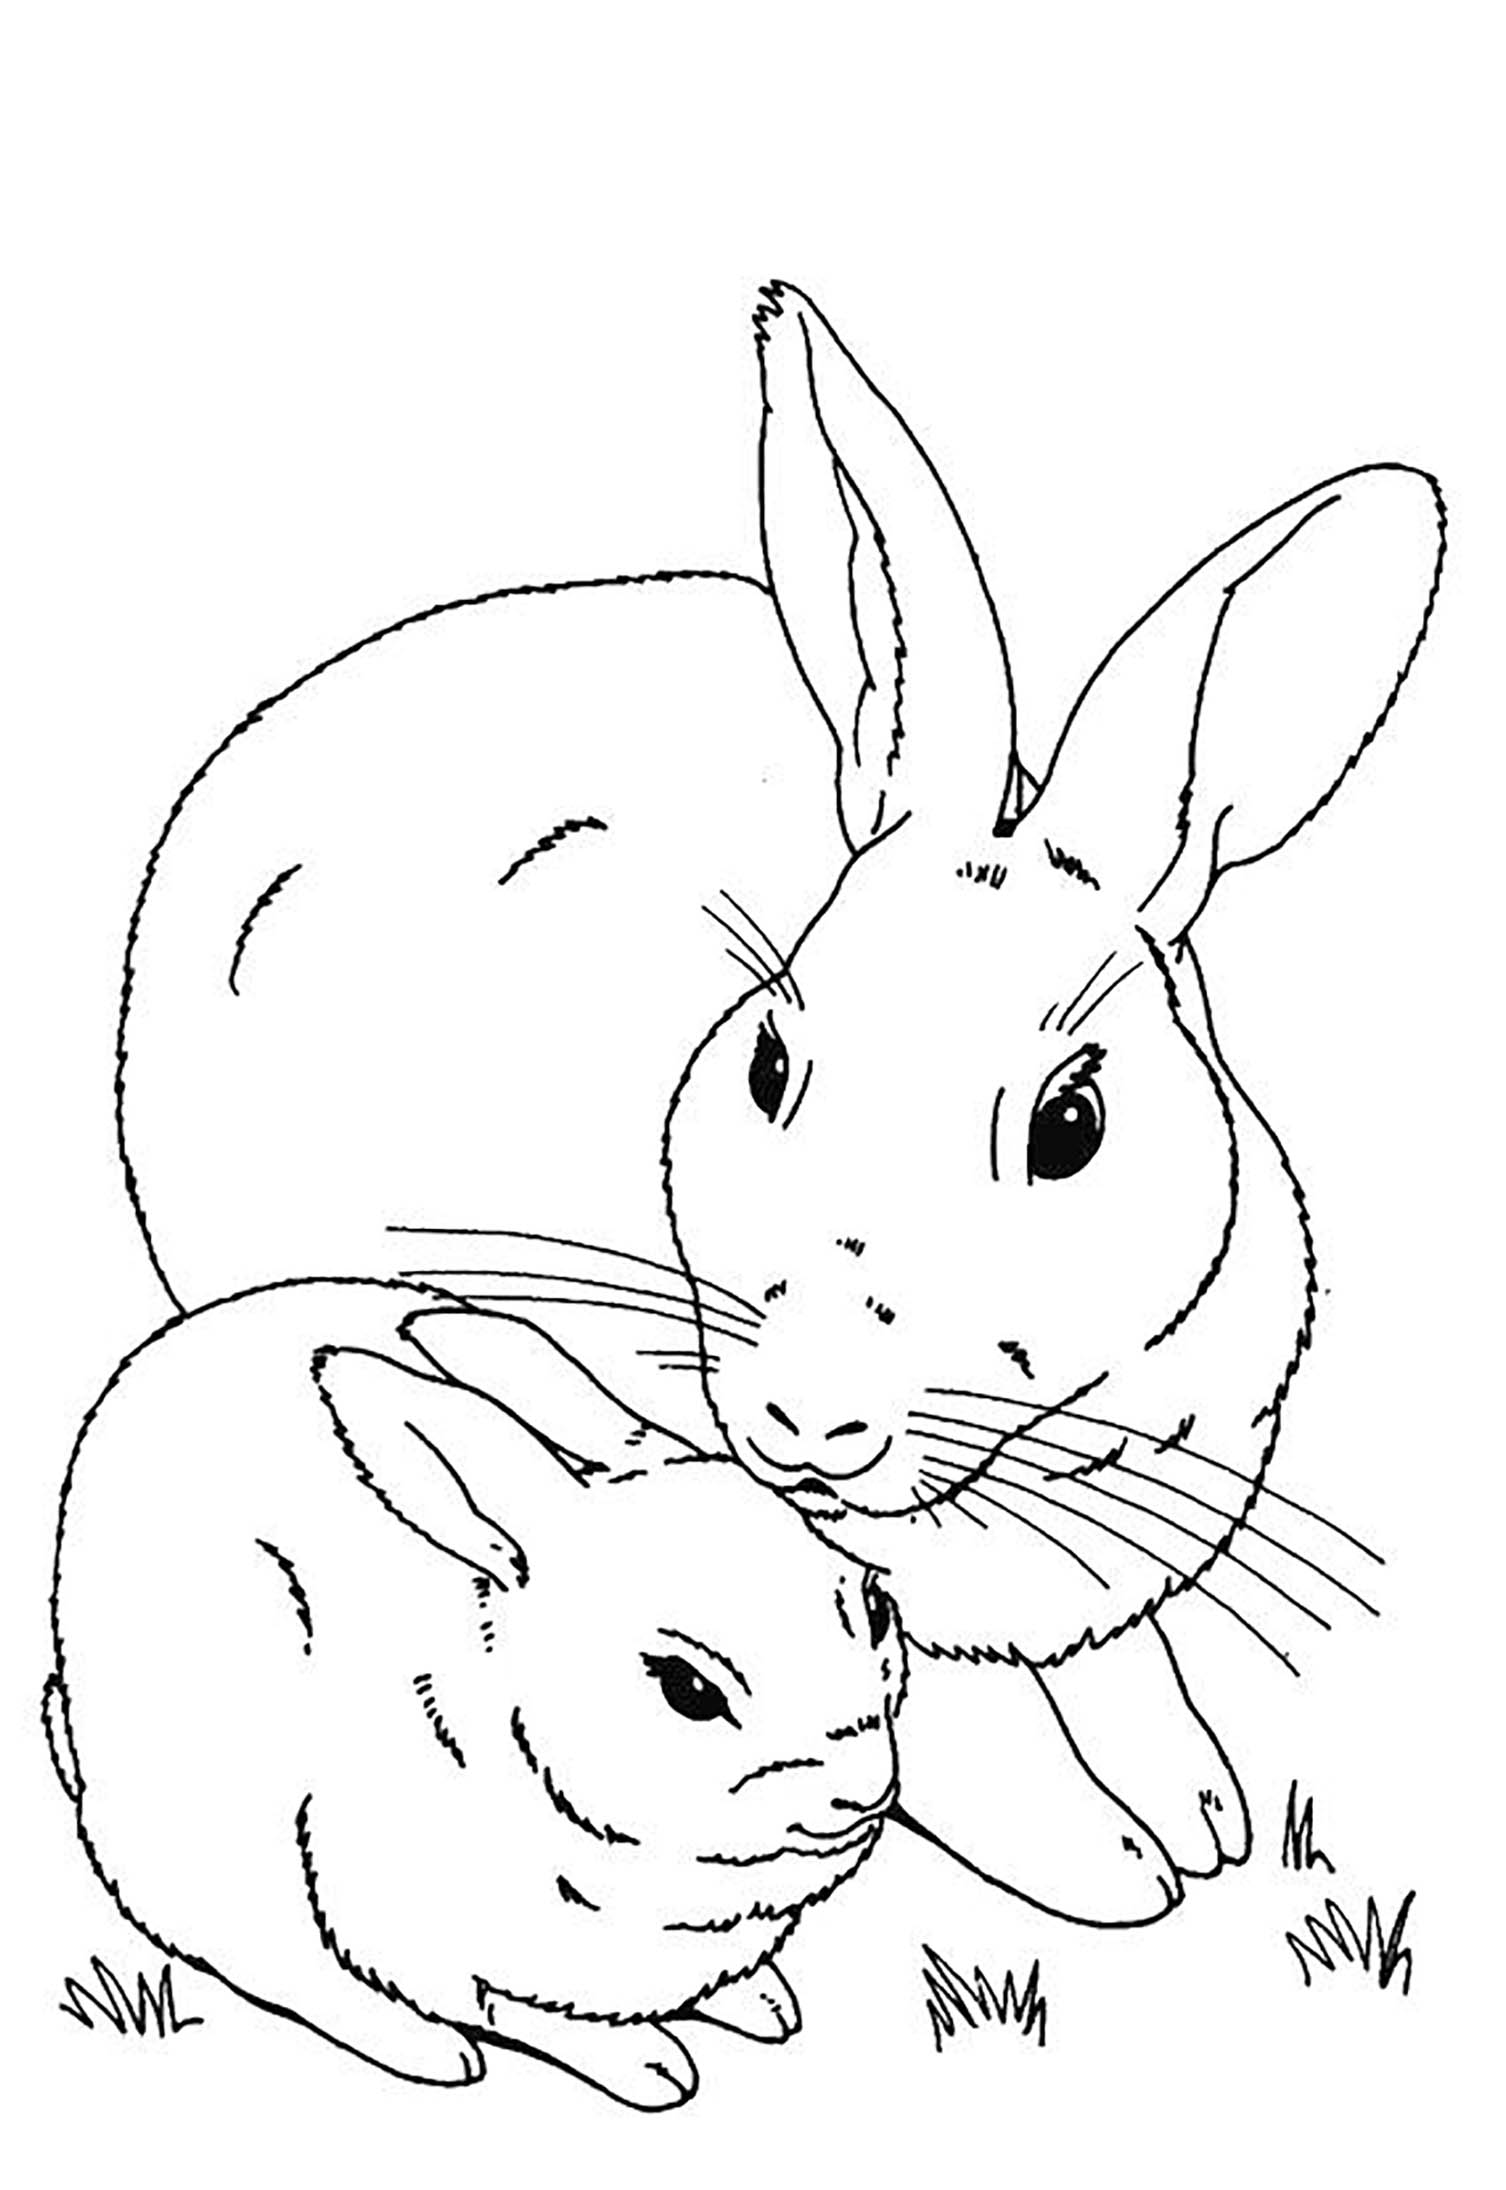 Conejo imagen para descargar e imprimir para los niños